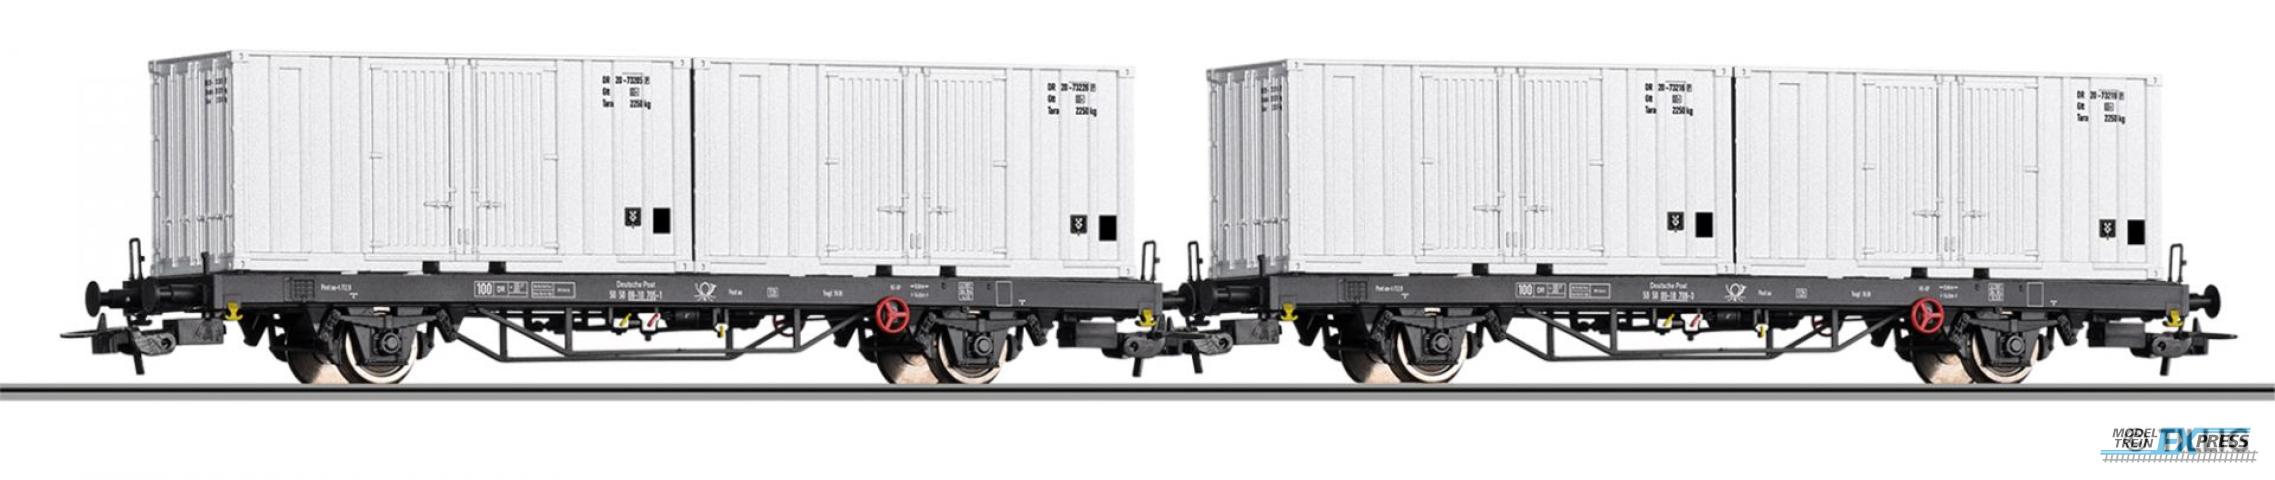 Tillig 70056 Güterwagenset der Deutschen Post, bestehend aus zwei Containertragwagen Post aa-t/12,8 beladen mit zwei 20' Container